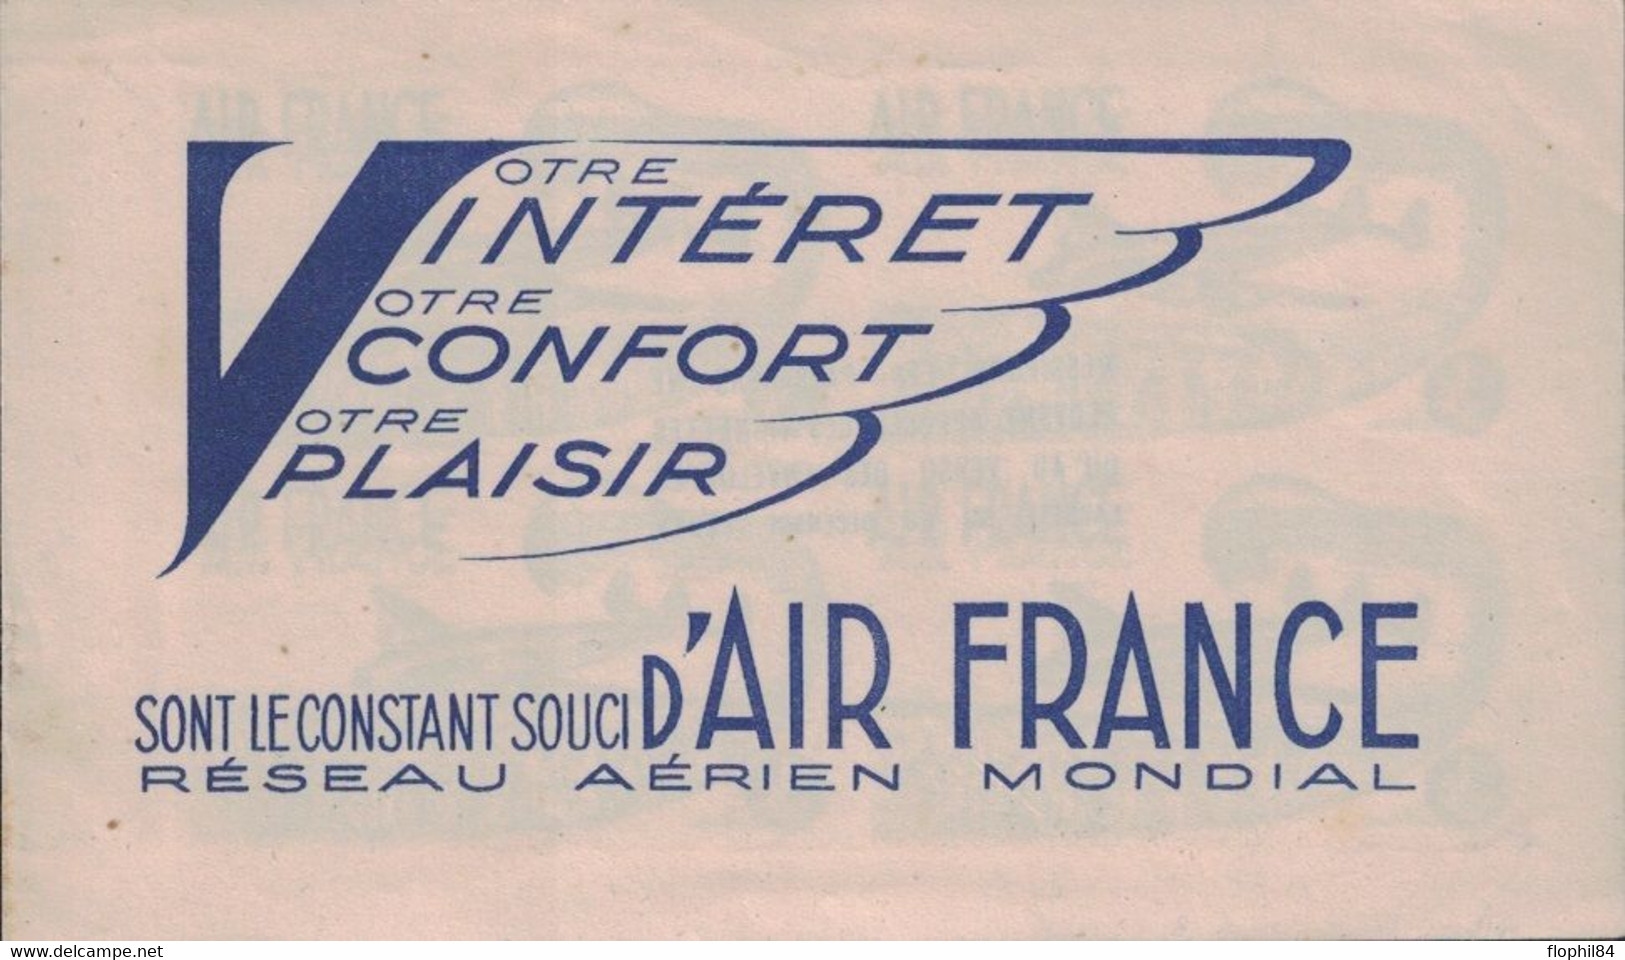 AIR FRANCE - VOTRE INTERET VOTRE CONFORT VOTRE PLAISIR SONT LE CONSTANT SOUCI D'AIR FRANCE - CARNET 4 VIGNETTES. - Luchtvaart